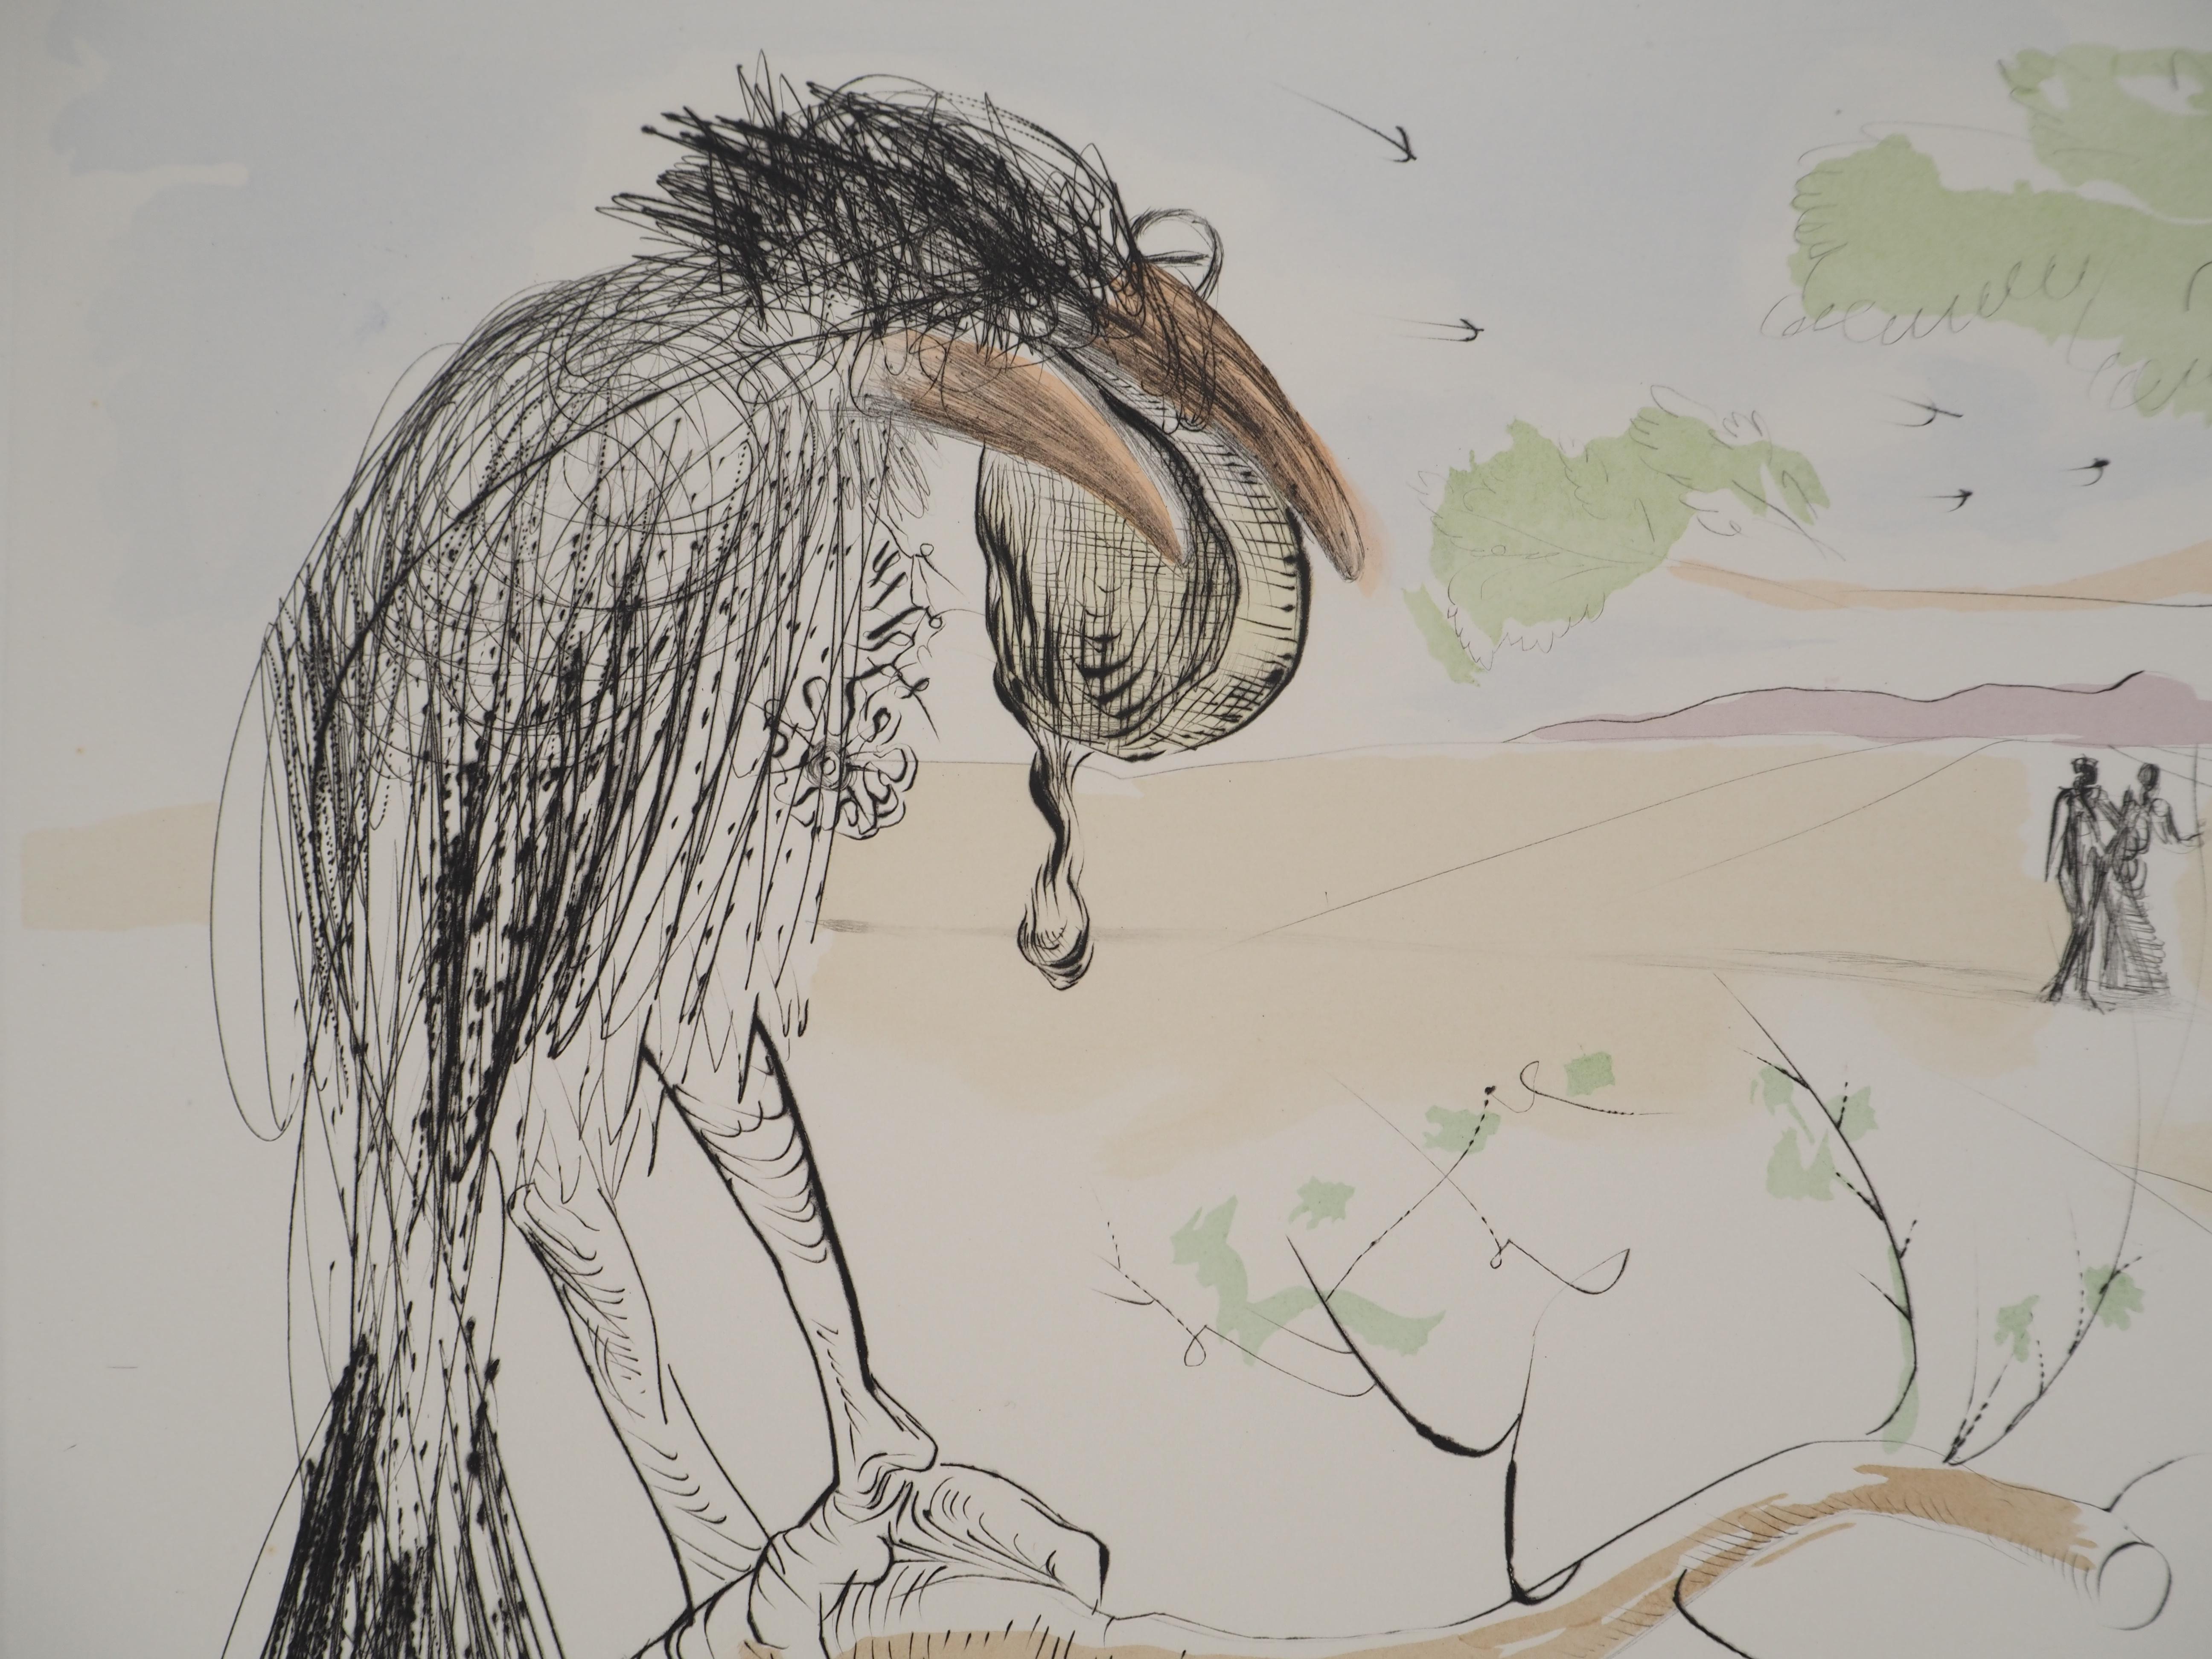 Salvador Dali
Die Krähe und der Fuchs, 1974

Original Kaltnadelradierung mit Schablonenveredelung (Atelier Rigal)
Mit Bleistift signiert 
Limitiert auf 250 Exemplare (hier nummeriert 183)
Auf Arches Vellum  76 x 56 cm (ca. 29,9 x 22